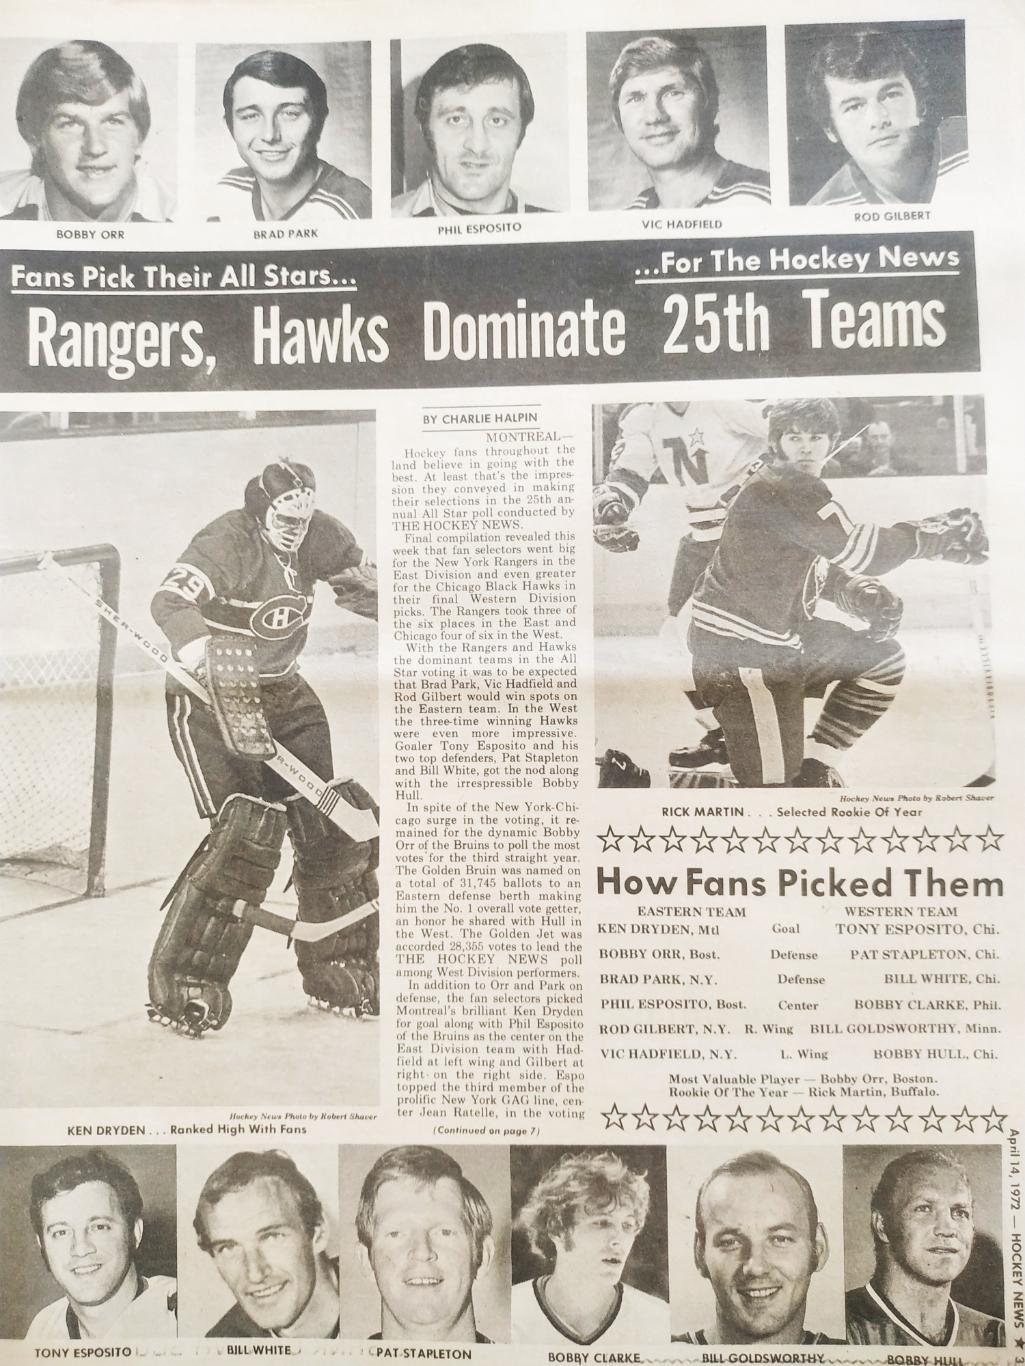 ХОККЕЙ ЖУРНАЛ ЕЖЕНЕДЕЛЬНИК НХЛ НОВОСТИ ХОККЕЯ APR.14 1972 NHL THE HOCKEY NEWS 2